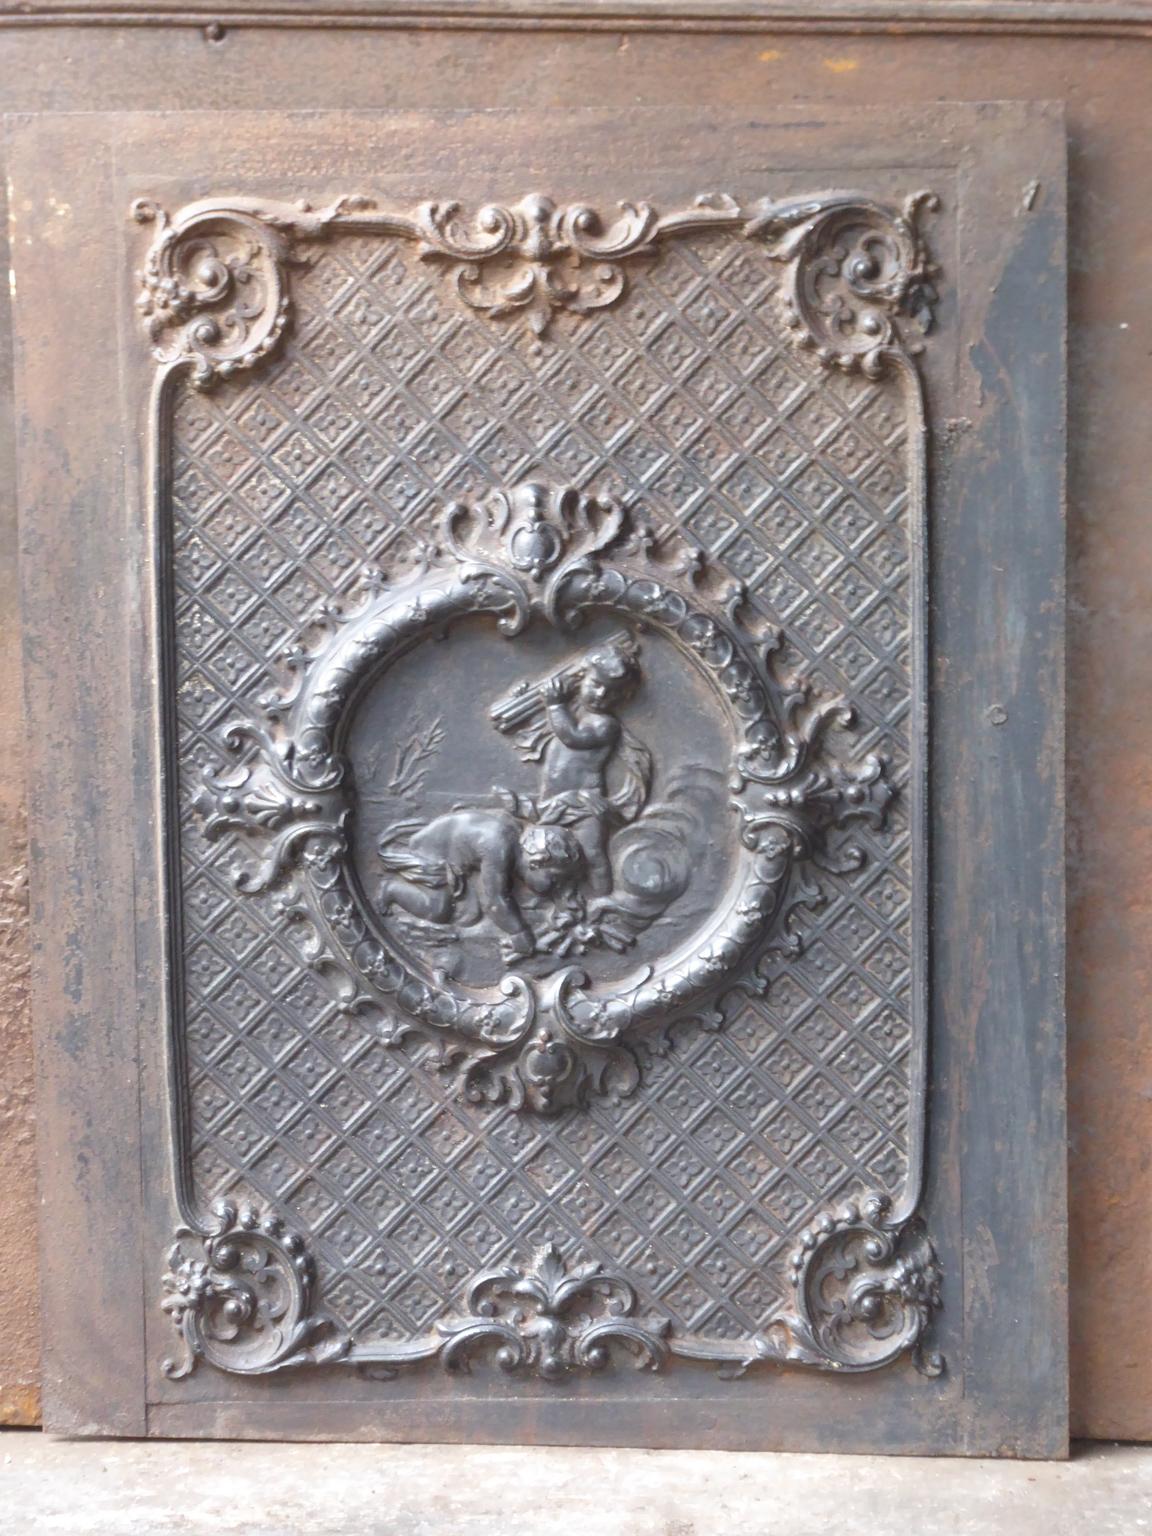 Französische Kaminplatte aus dem 19. Jahrhundert aus der Zeit Napoleons III. mit erntenden Amoretten. Die Feuerrückwand ist aus Gusseisen und hat eine natürliche braune Patina. Auf Wunsch kann er ohne Aufpreis auch in Schwarz / Zinn gefertigt